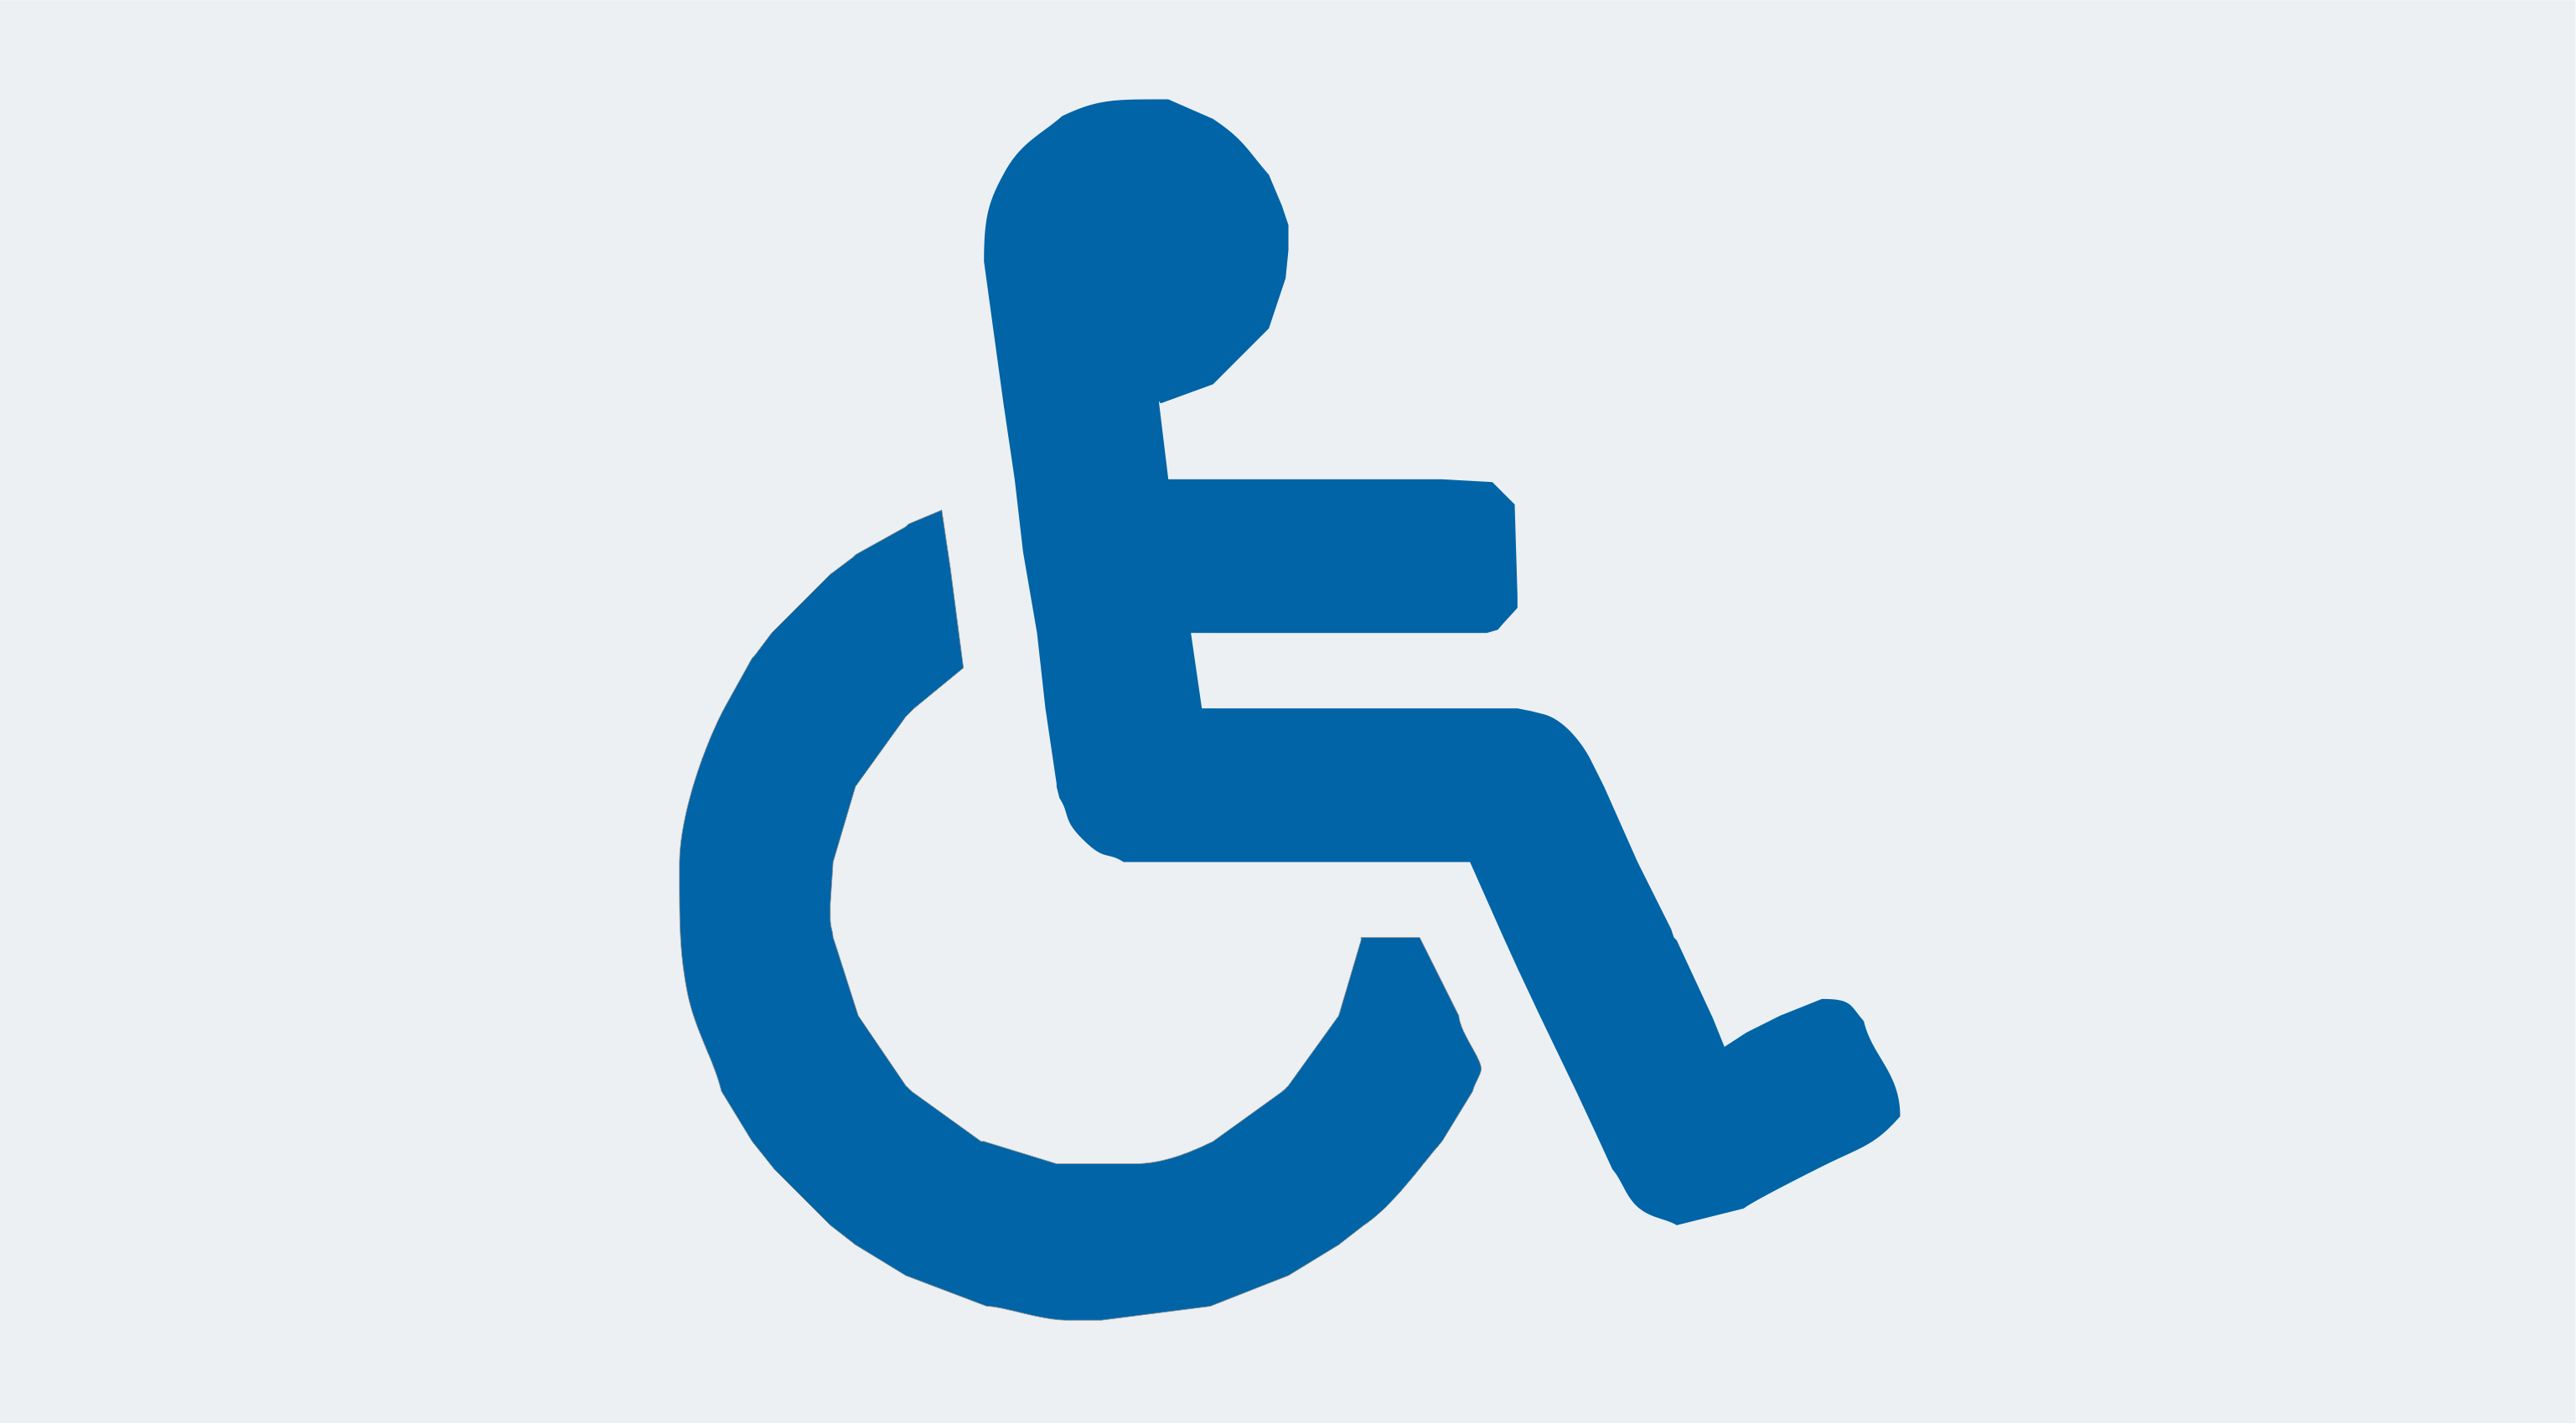 Ikona dekoracyjna, pod którą można znaleźć link do informacji dla wyborców z niepełnosprawnosciami